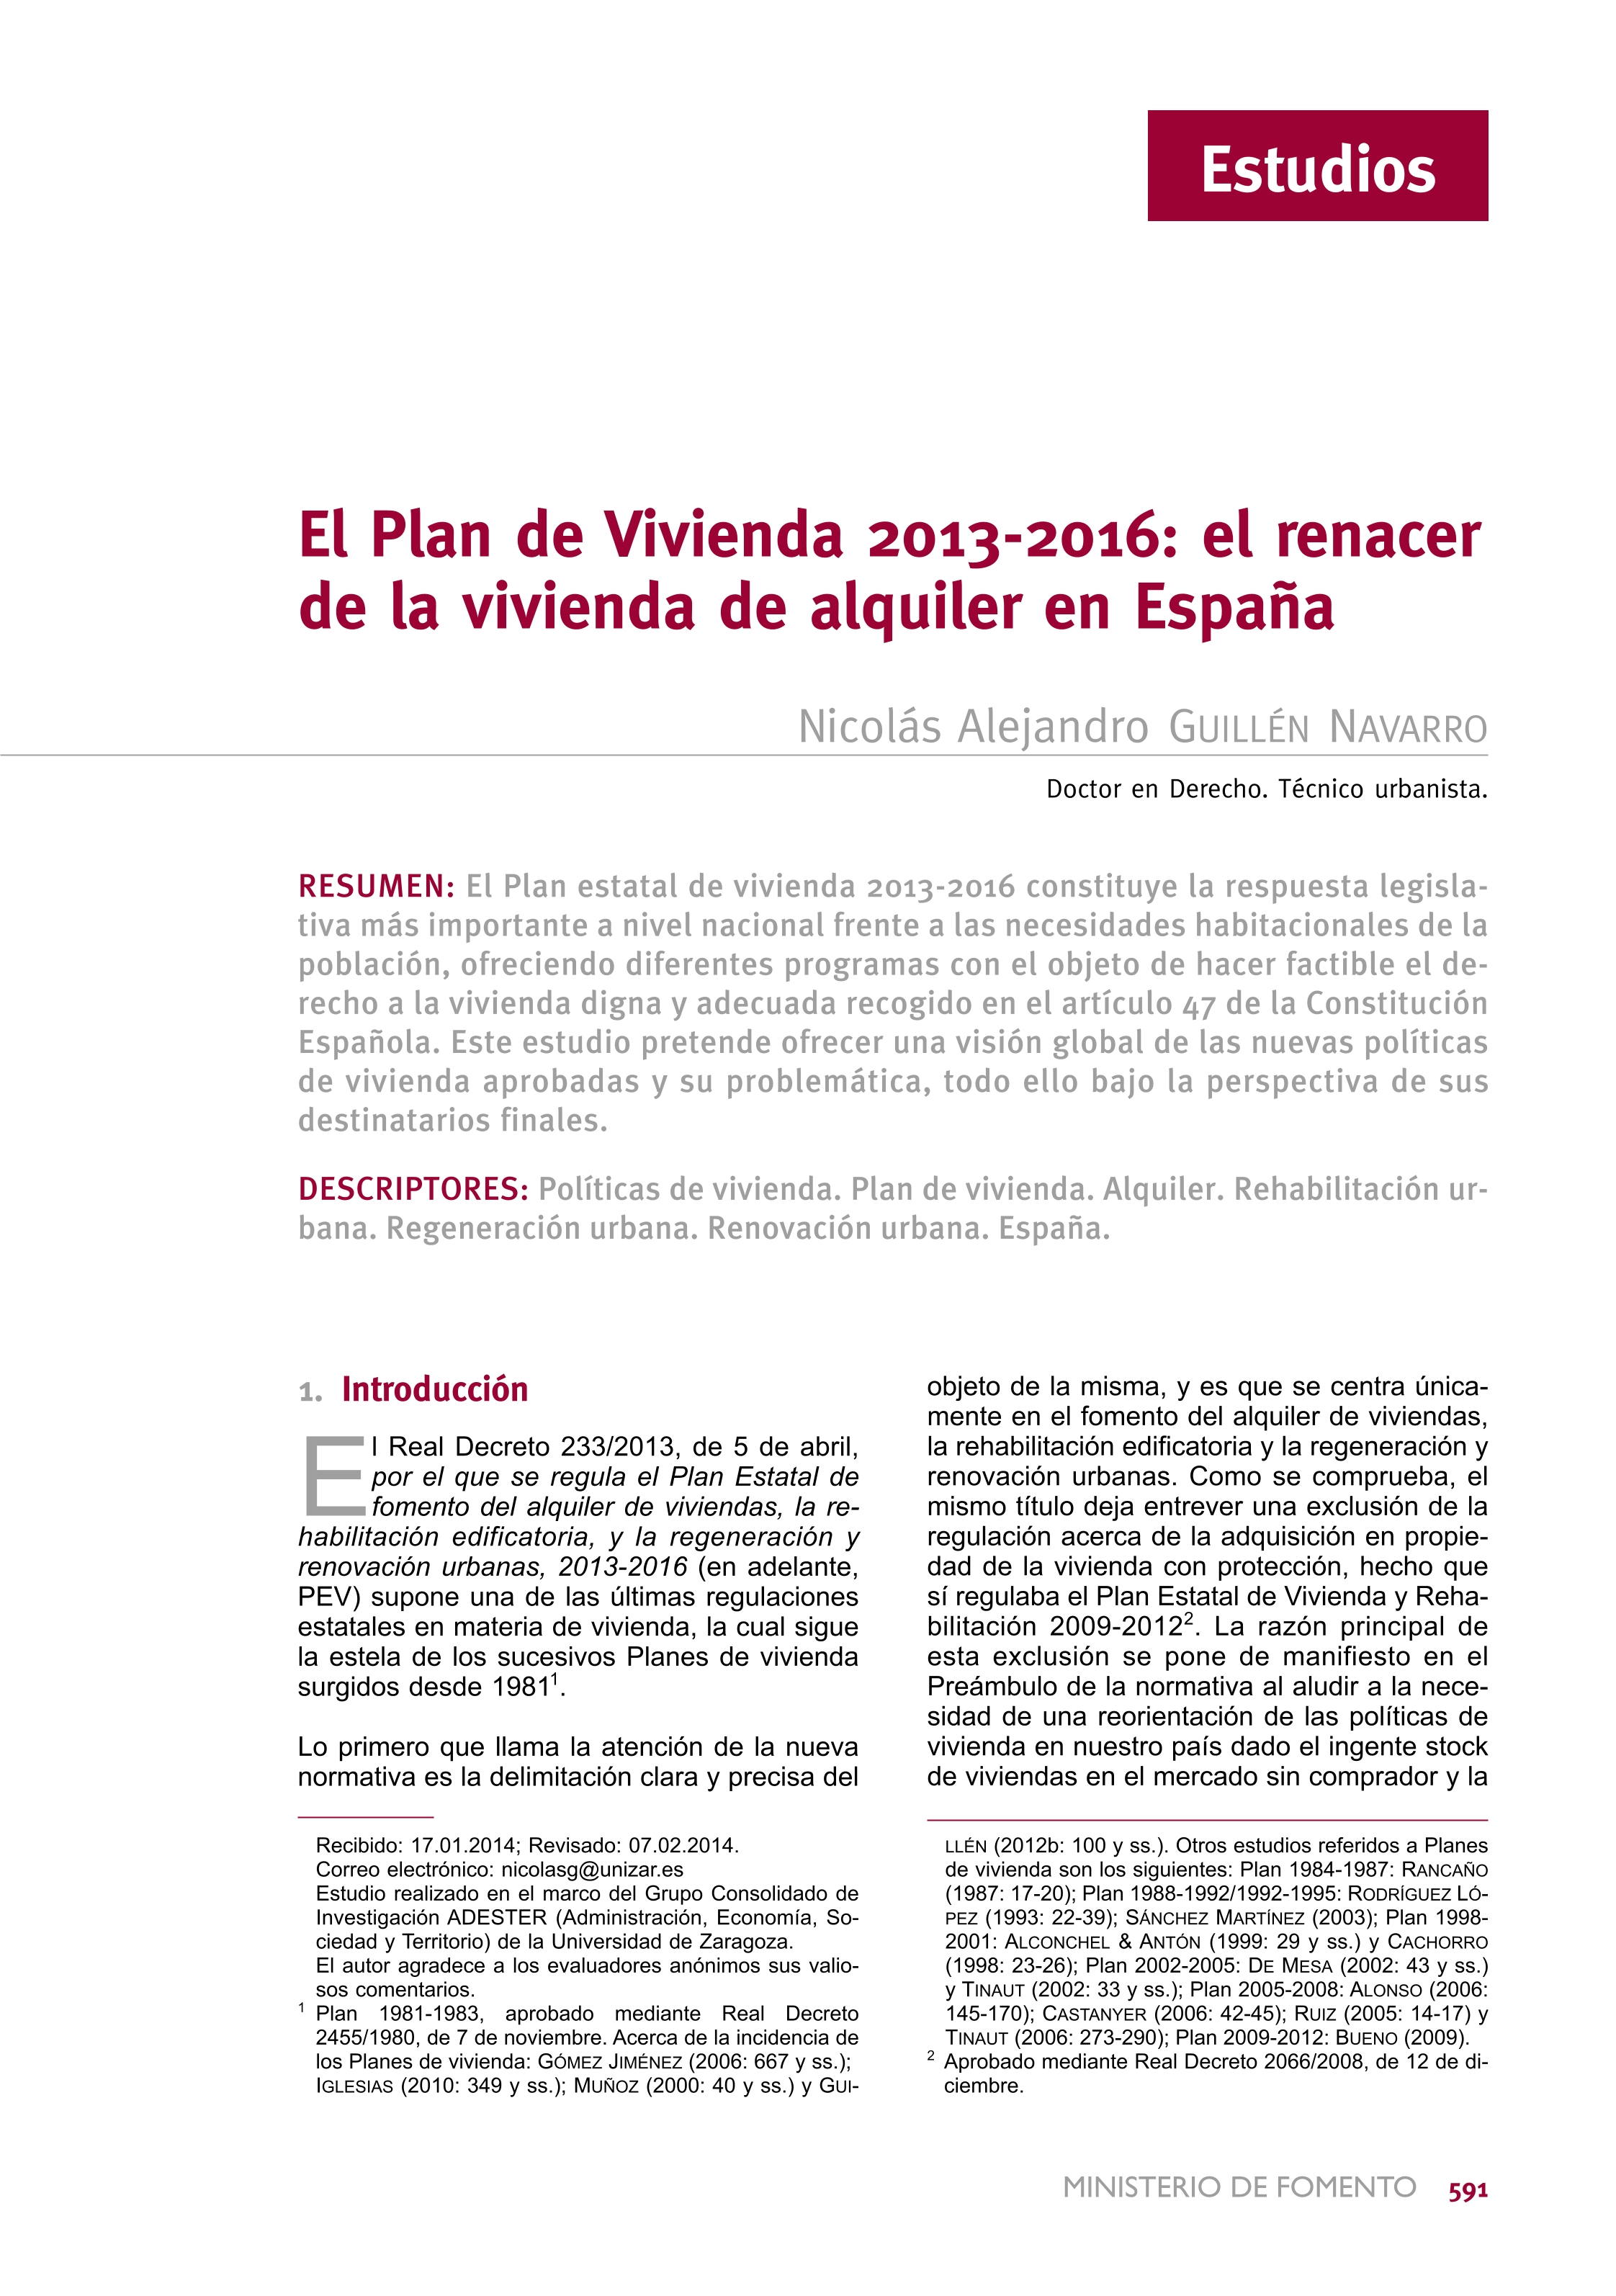 El plan de vivienda 2013-2016: el renacer de la vivienda de alquiler en España